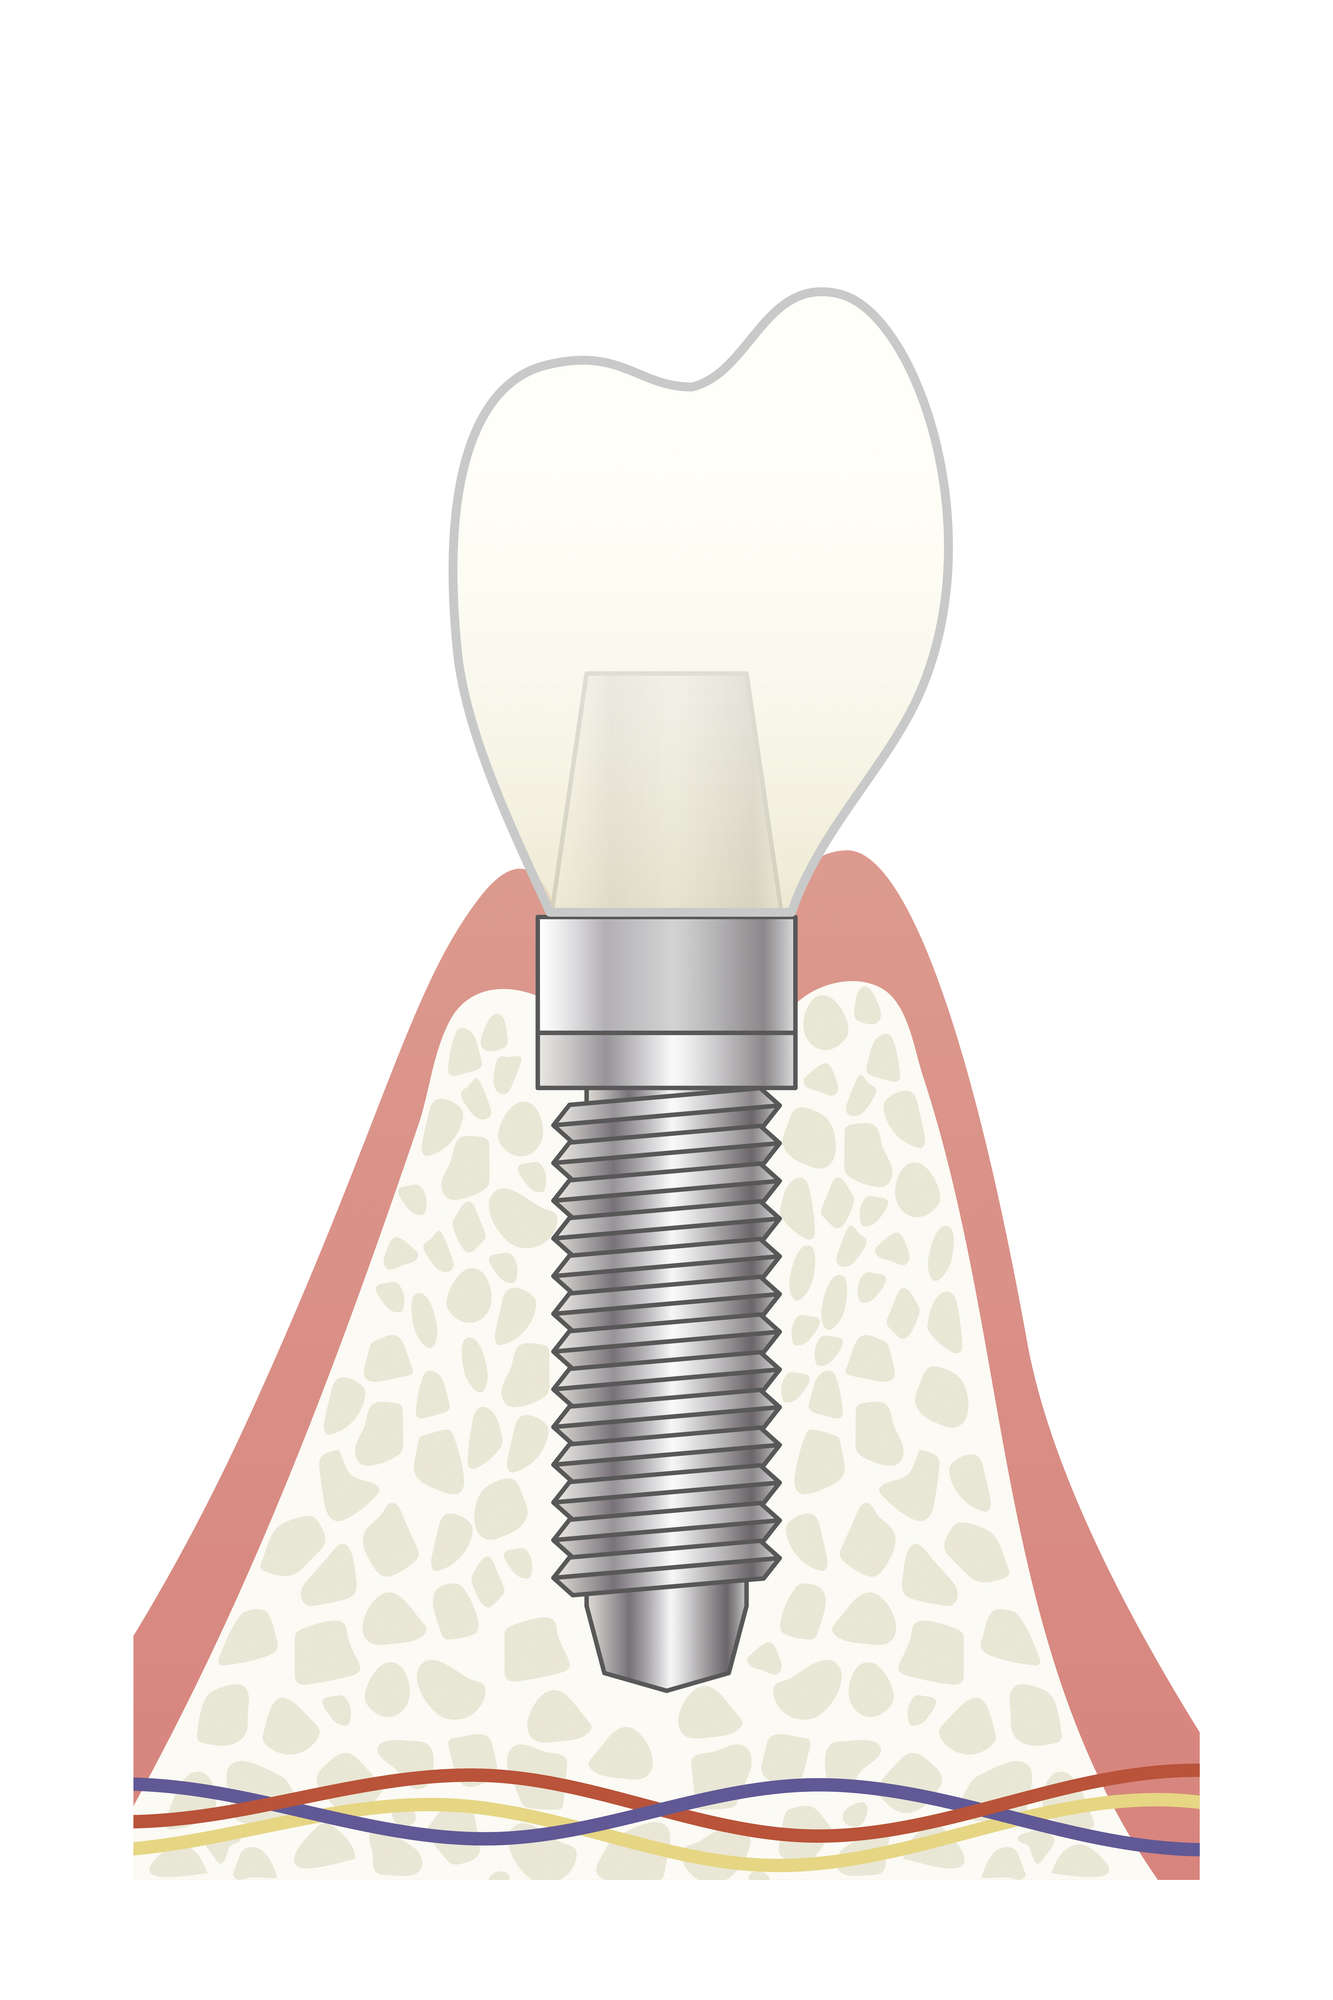 根管治療VSインプラントどちらを選ぶべきか？三好歯科 自由が丘歯科医師コラム、インプラントイメージ